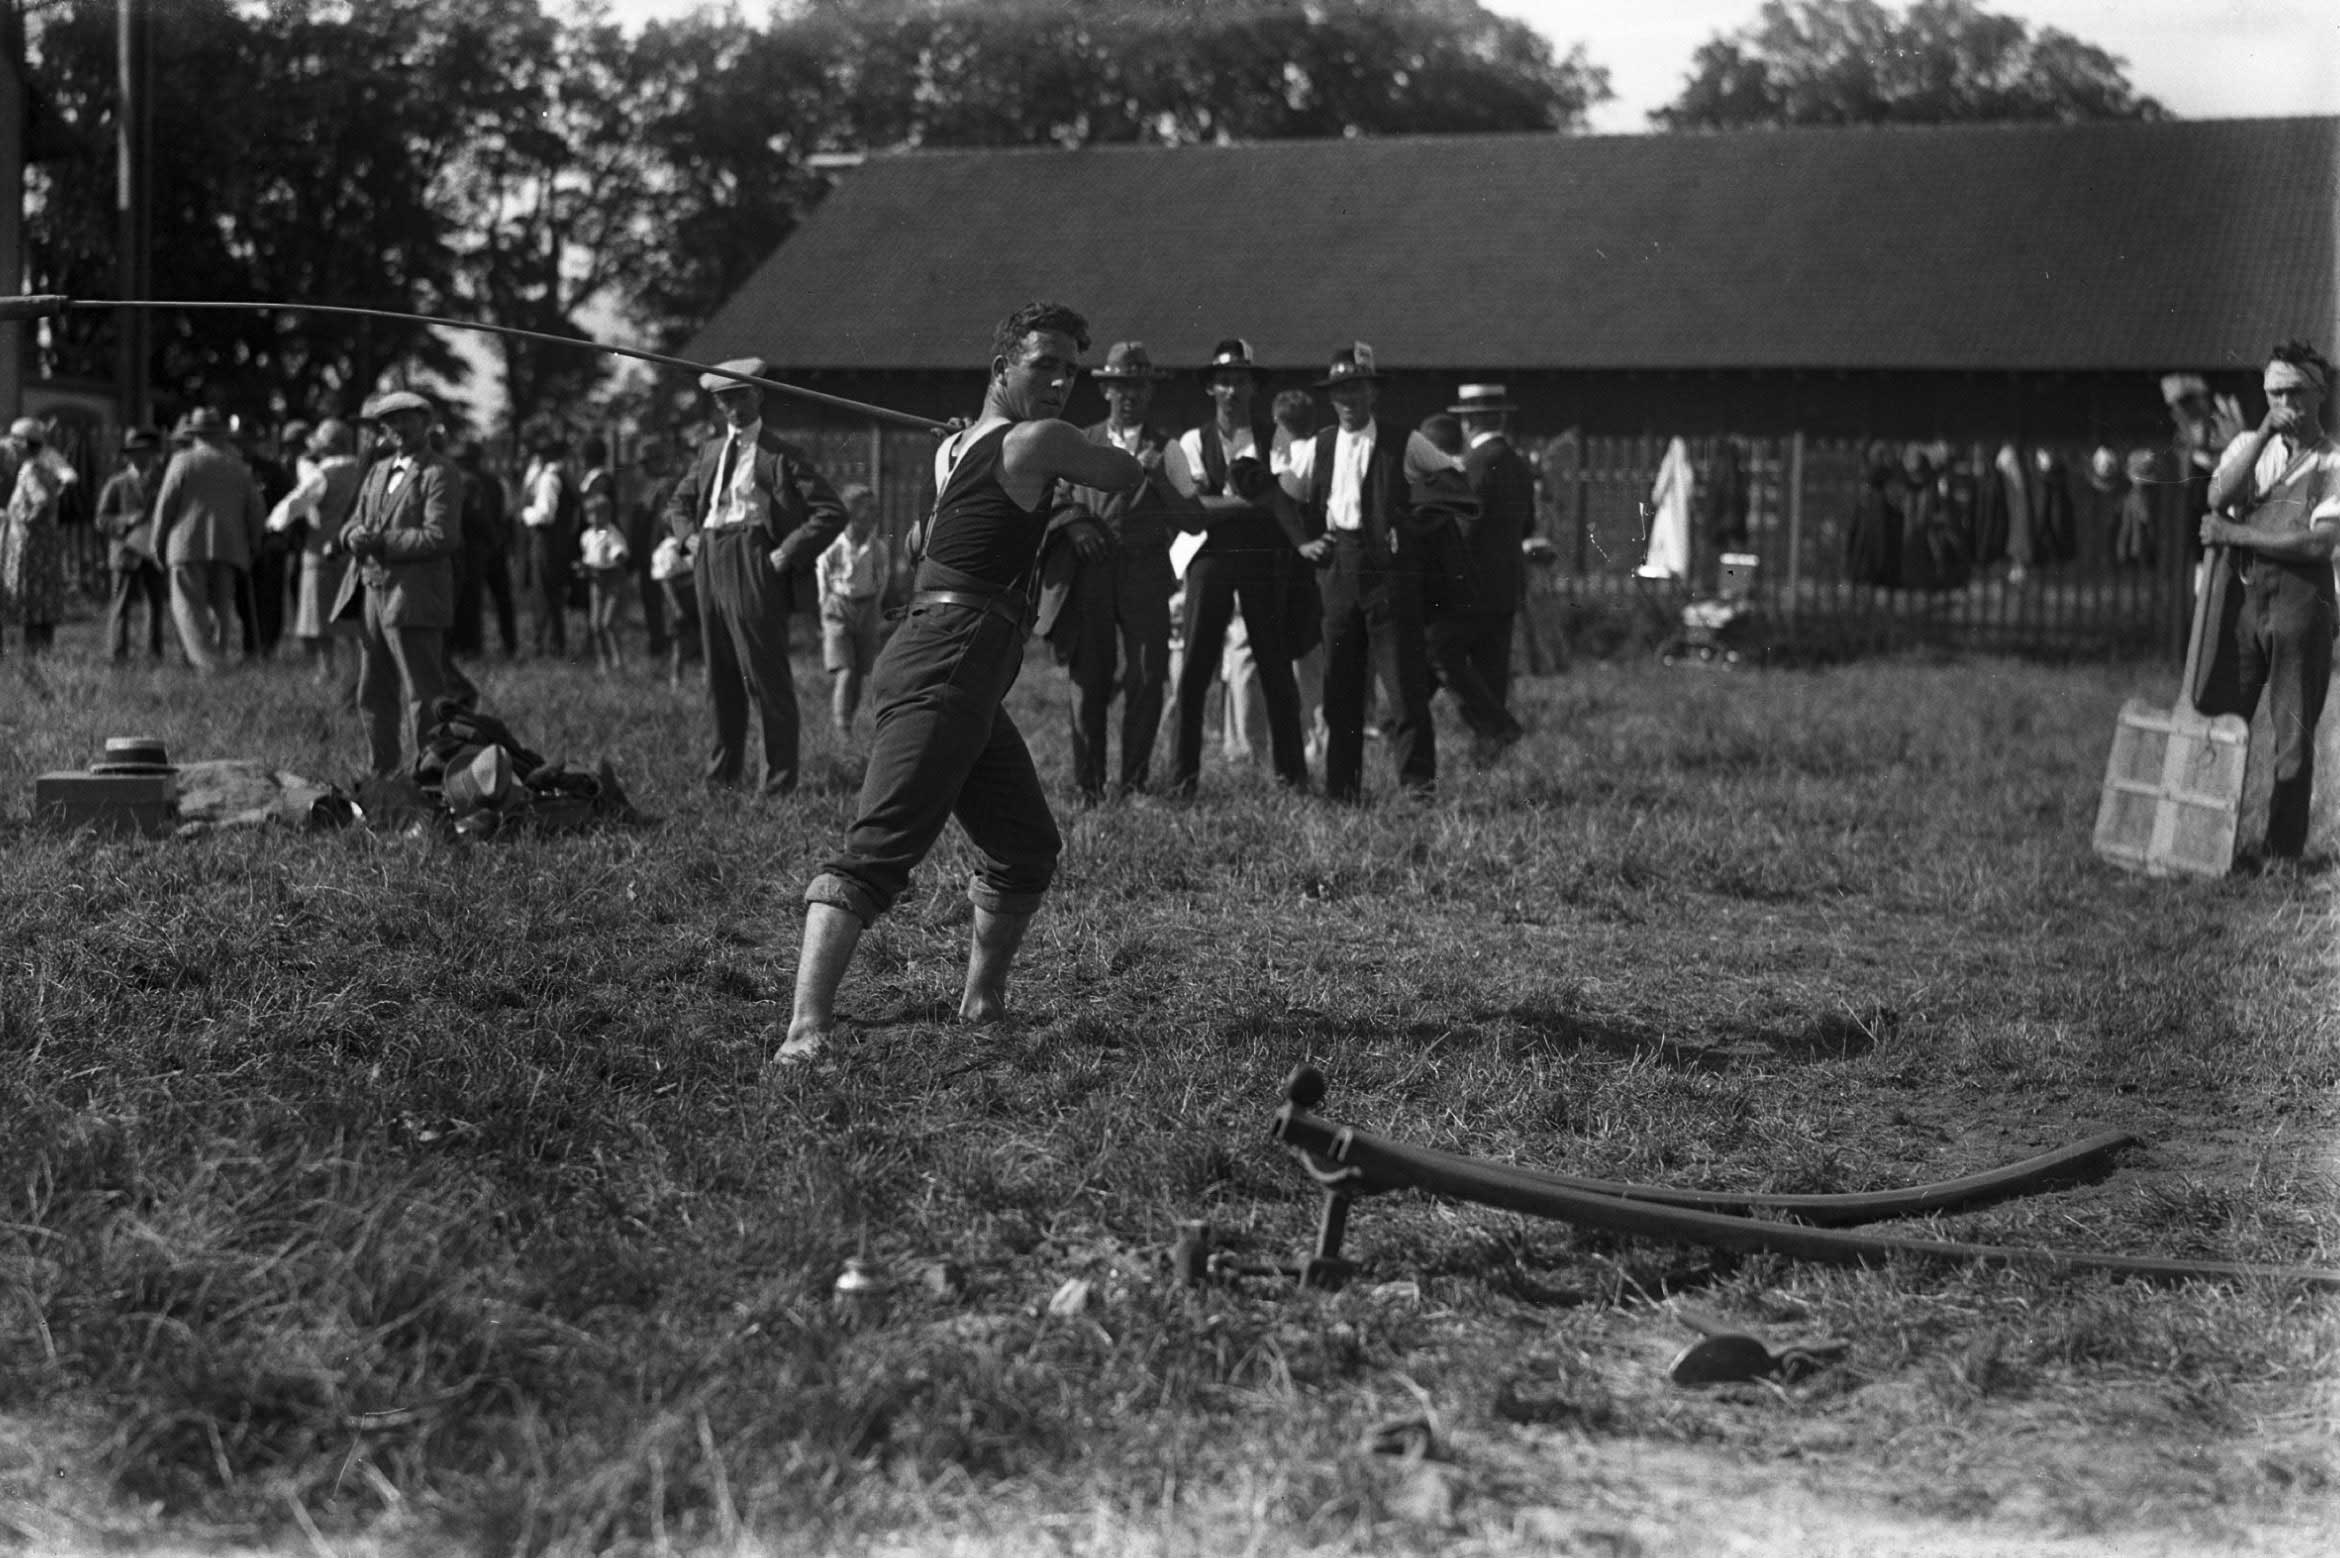 Festa federale di hornuss, Thun, 1930: un giocatore pronto a colpire il disco (foto di Carl Jost) © Carl Jost/Staatsarchiv Bern